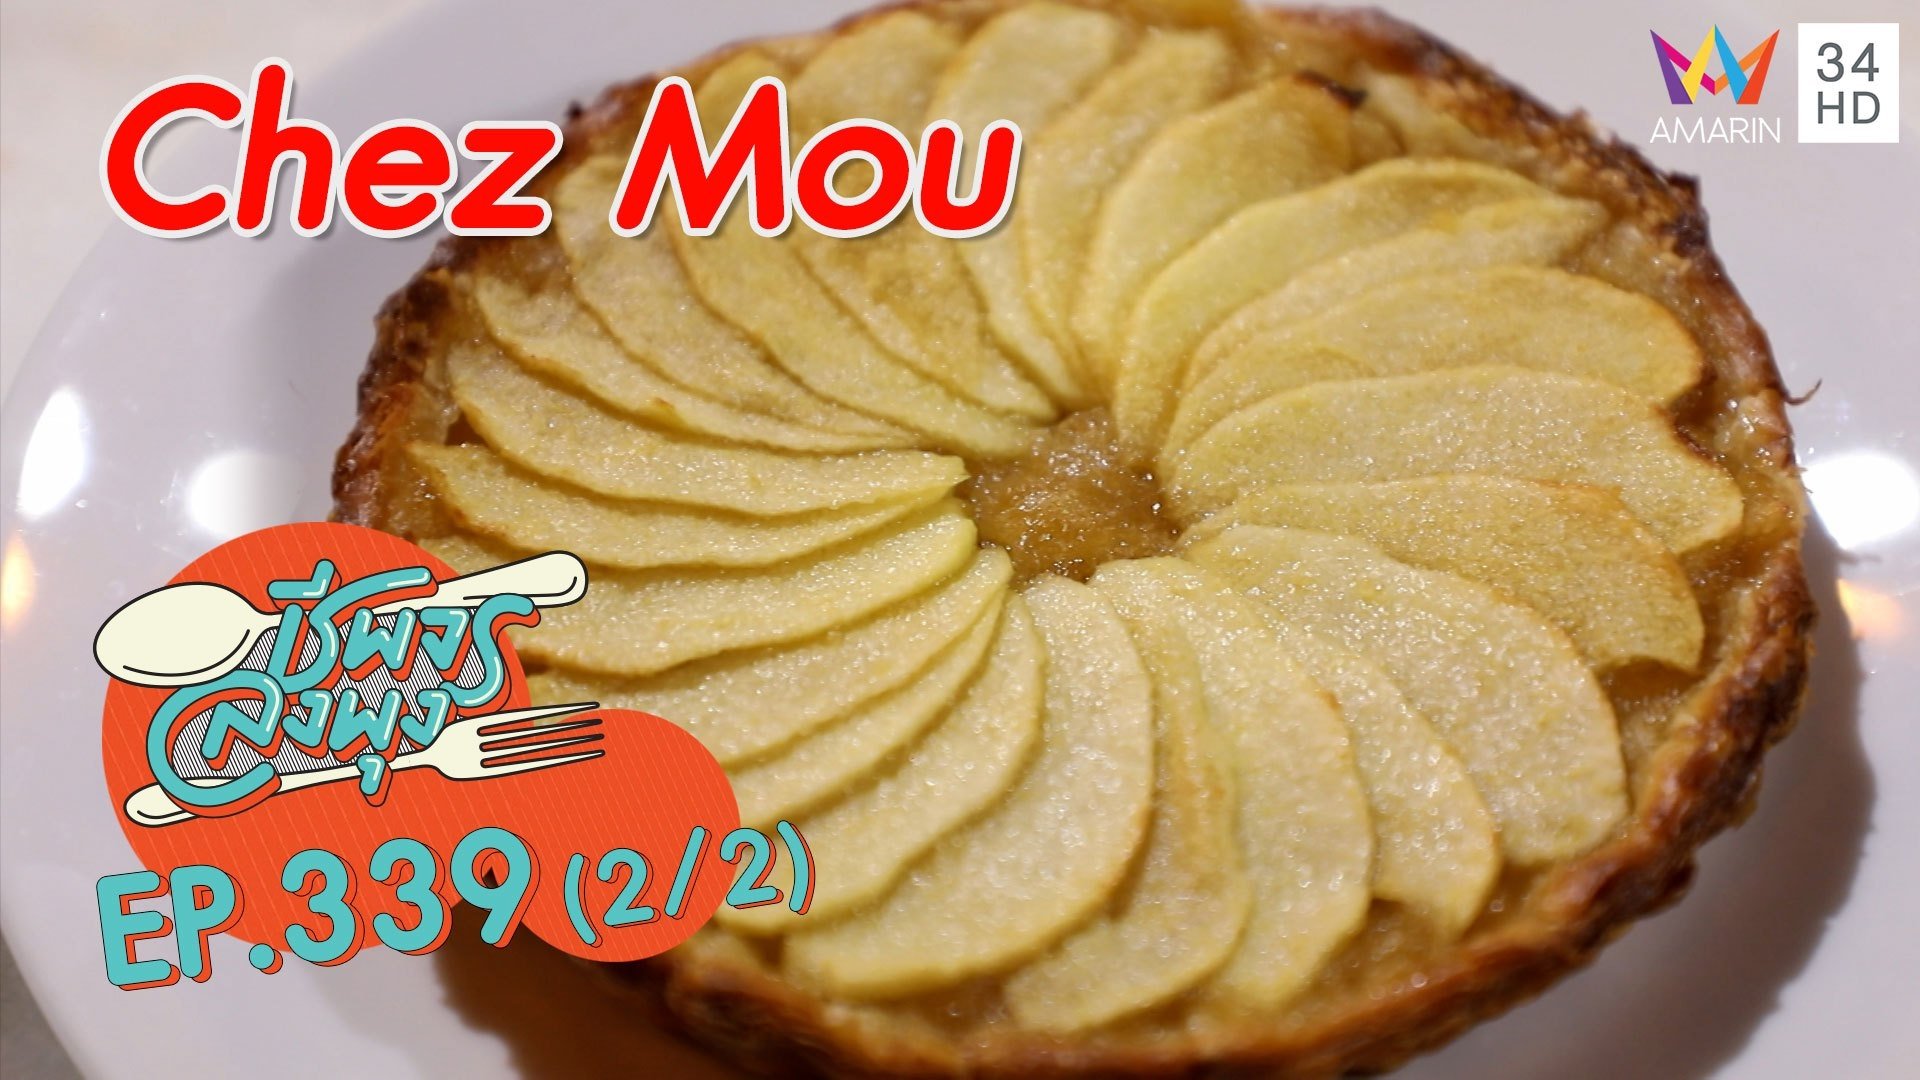 สุดฟิน! ขนมโฮมเมดสไตล์ฝรั่งเศส @ ร้าน Chez Mou | ชีพจรลงพุง | 6 พ.ย. 64 (2/2) | AMARIN TVHD34